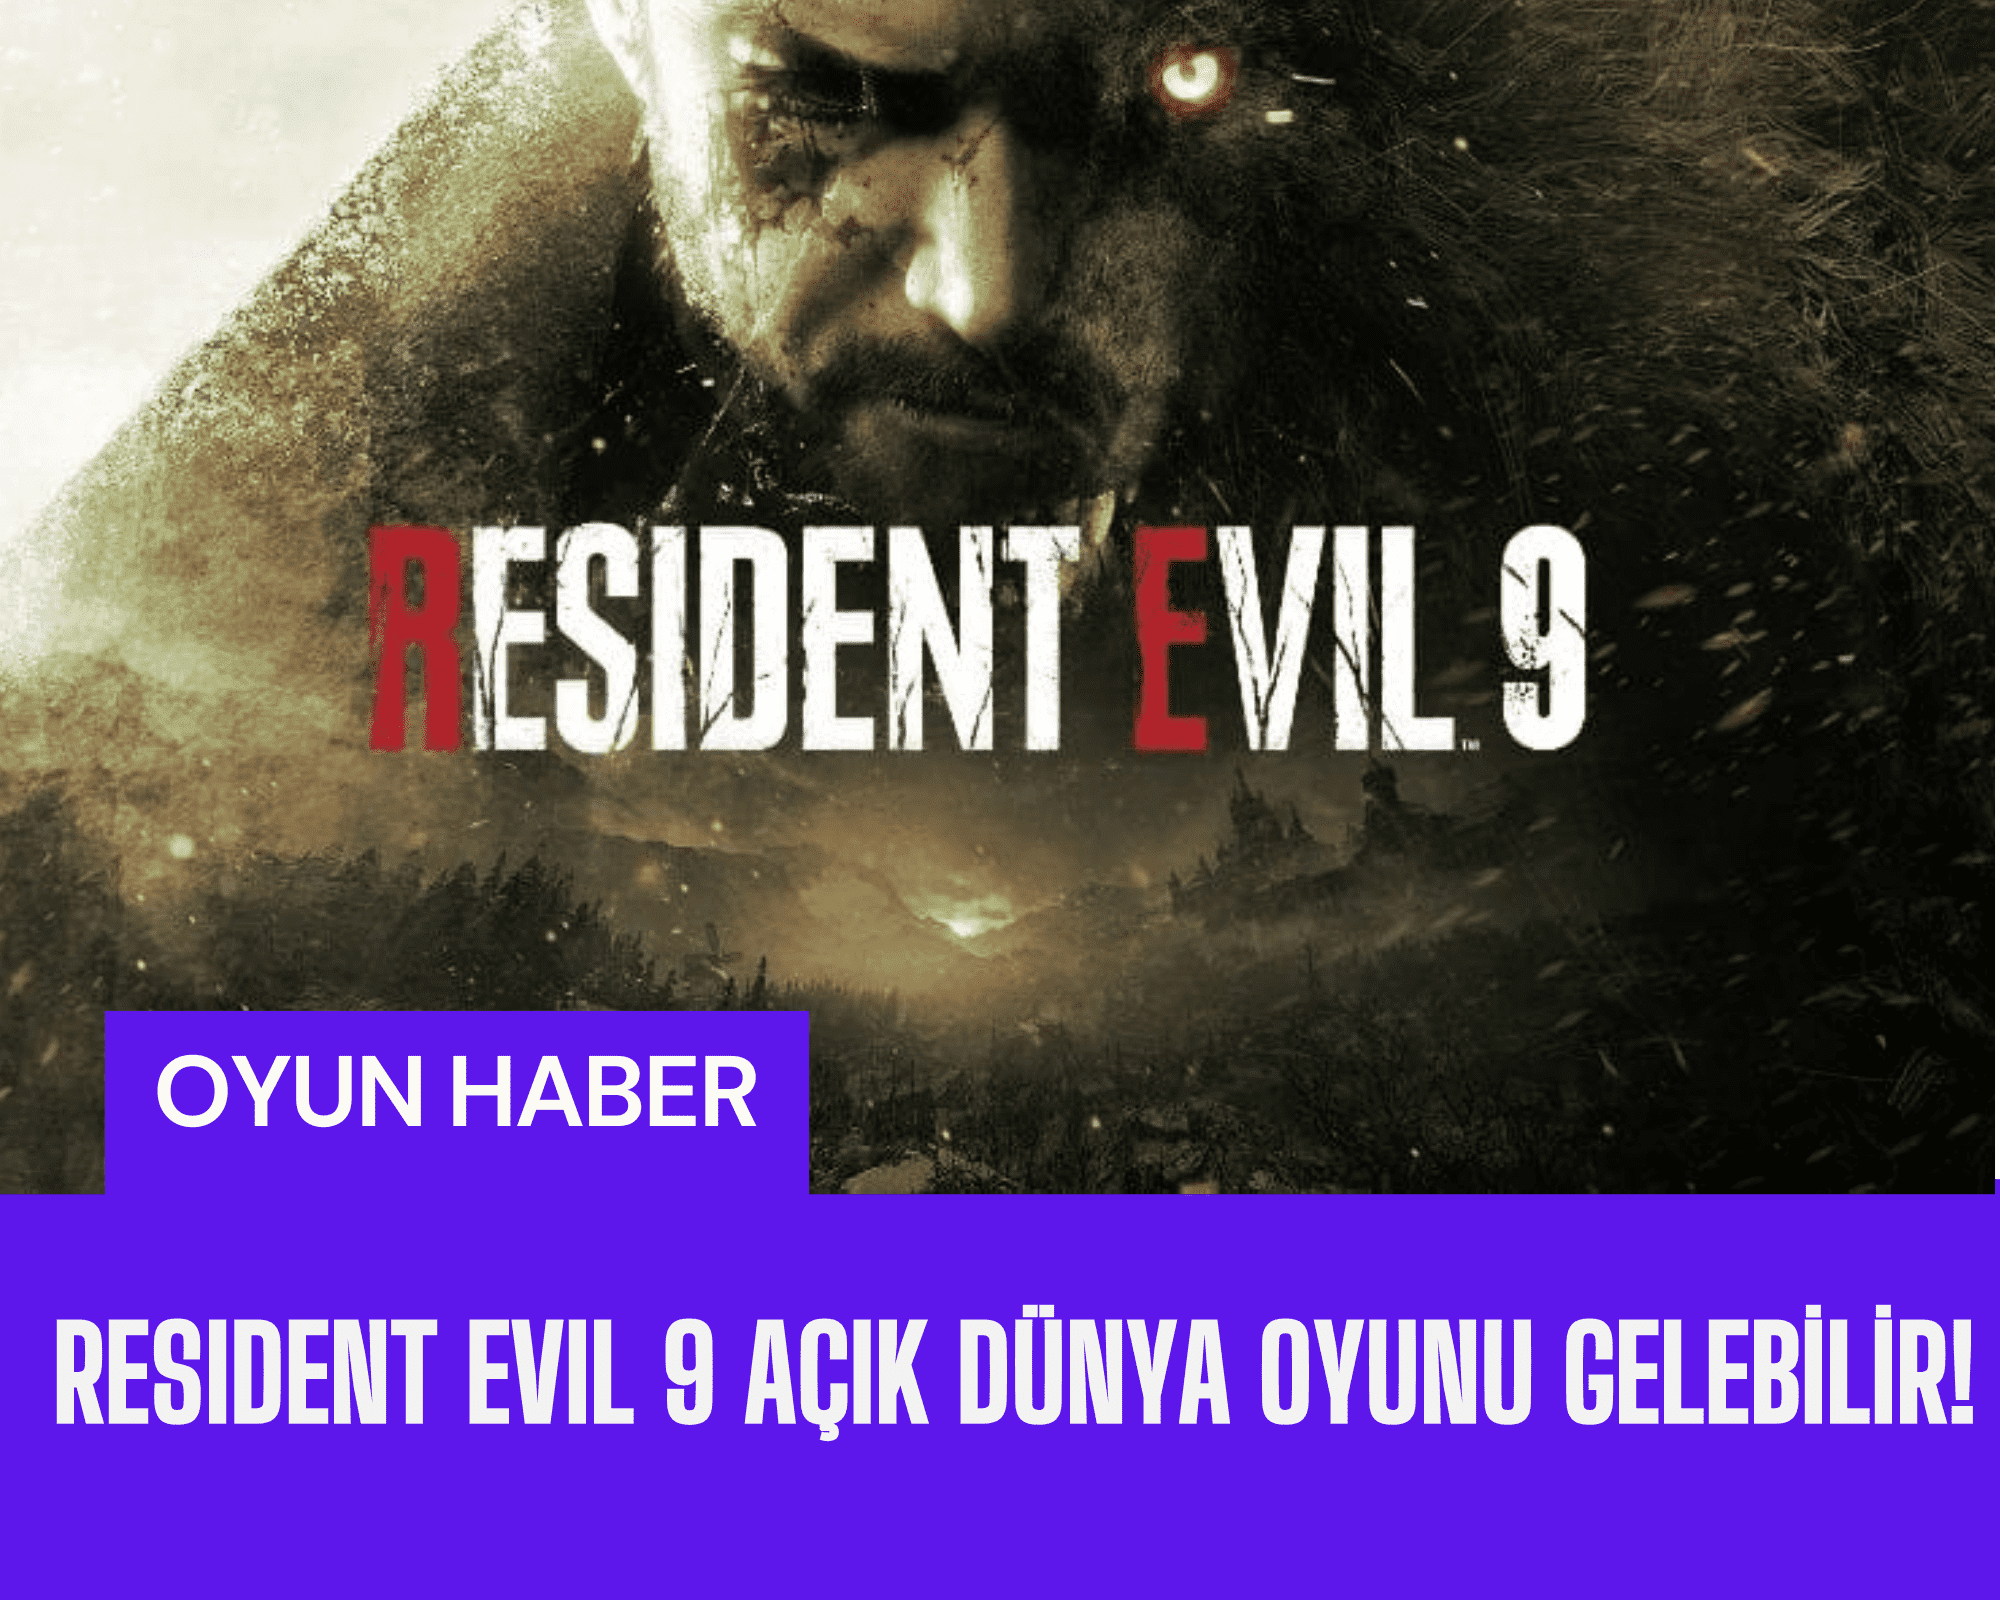 Capcom'un Resident Evil 9 oyunundan beklenen açık dünya konsepti teaser görseli